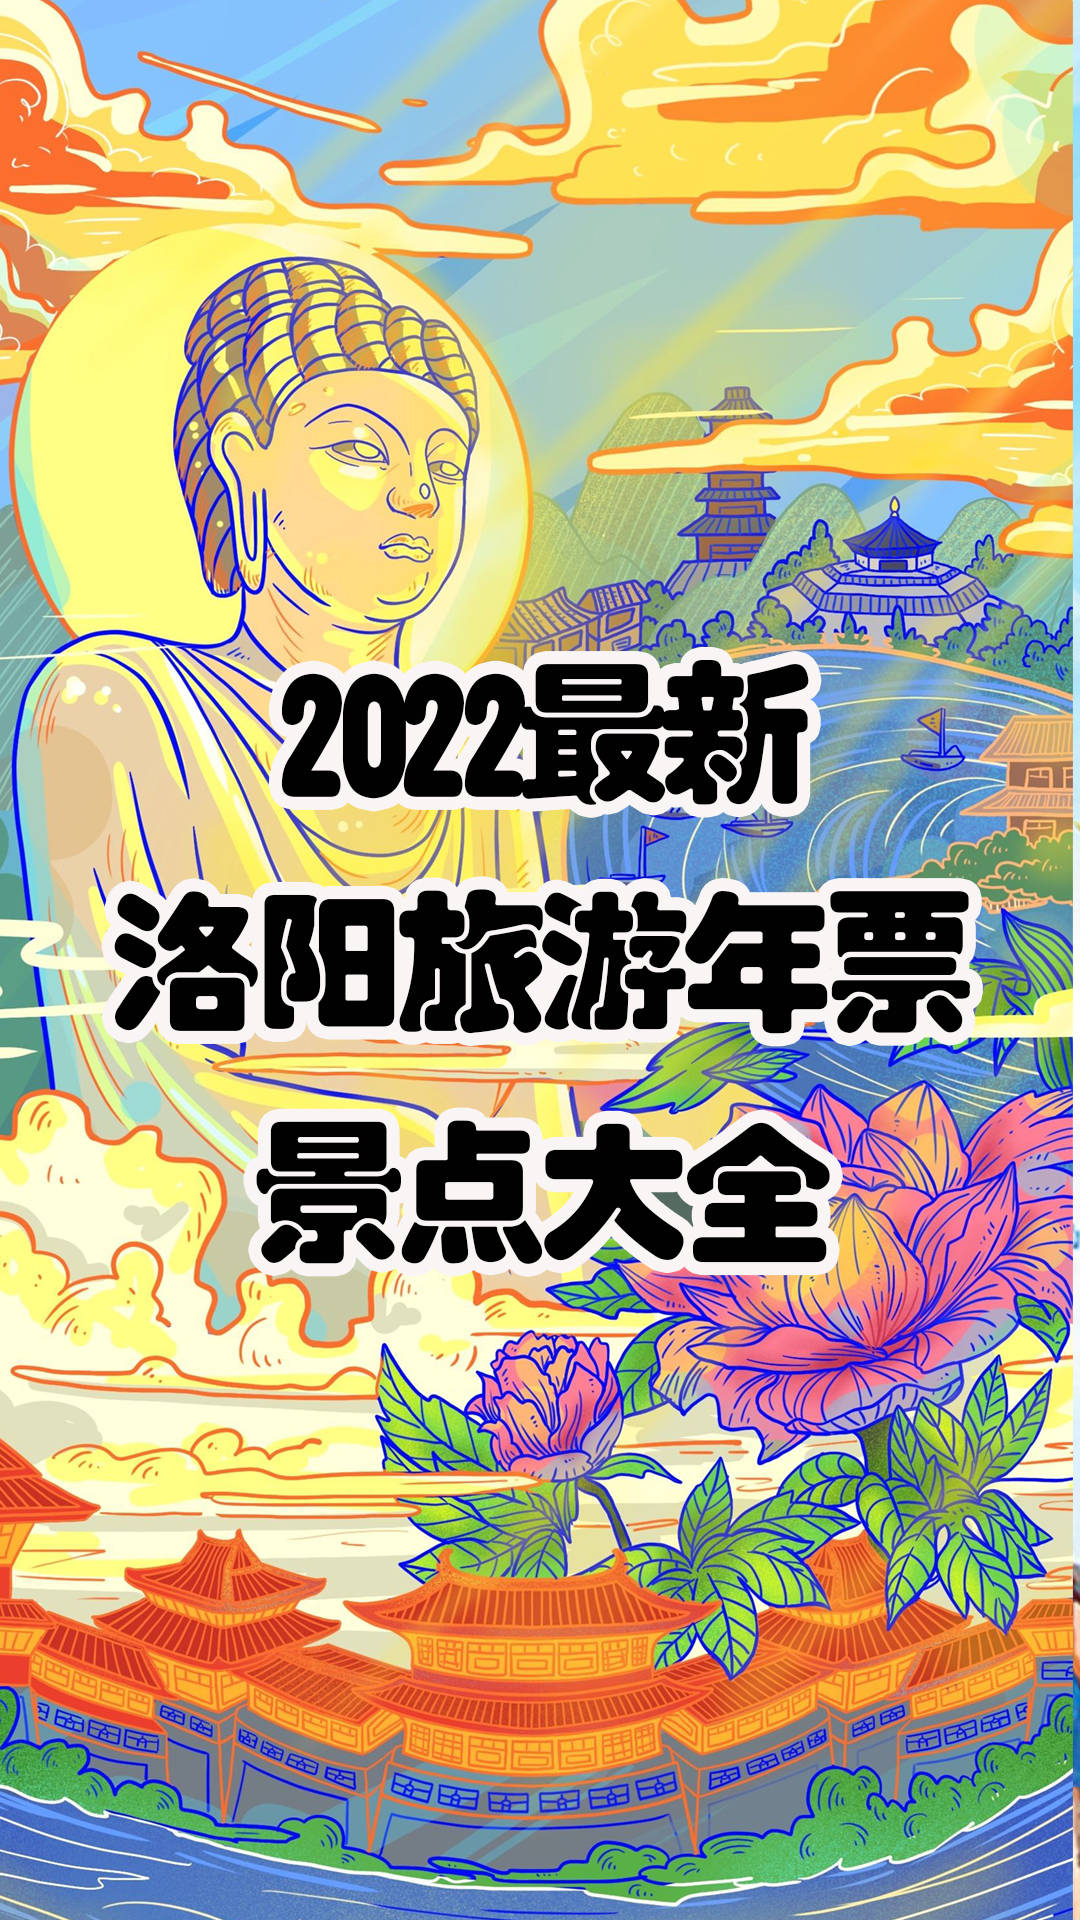 2022年洛阳旅游年票包含52家景点